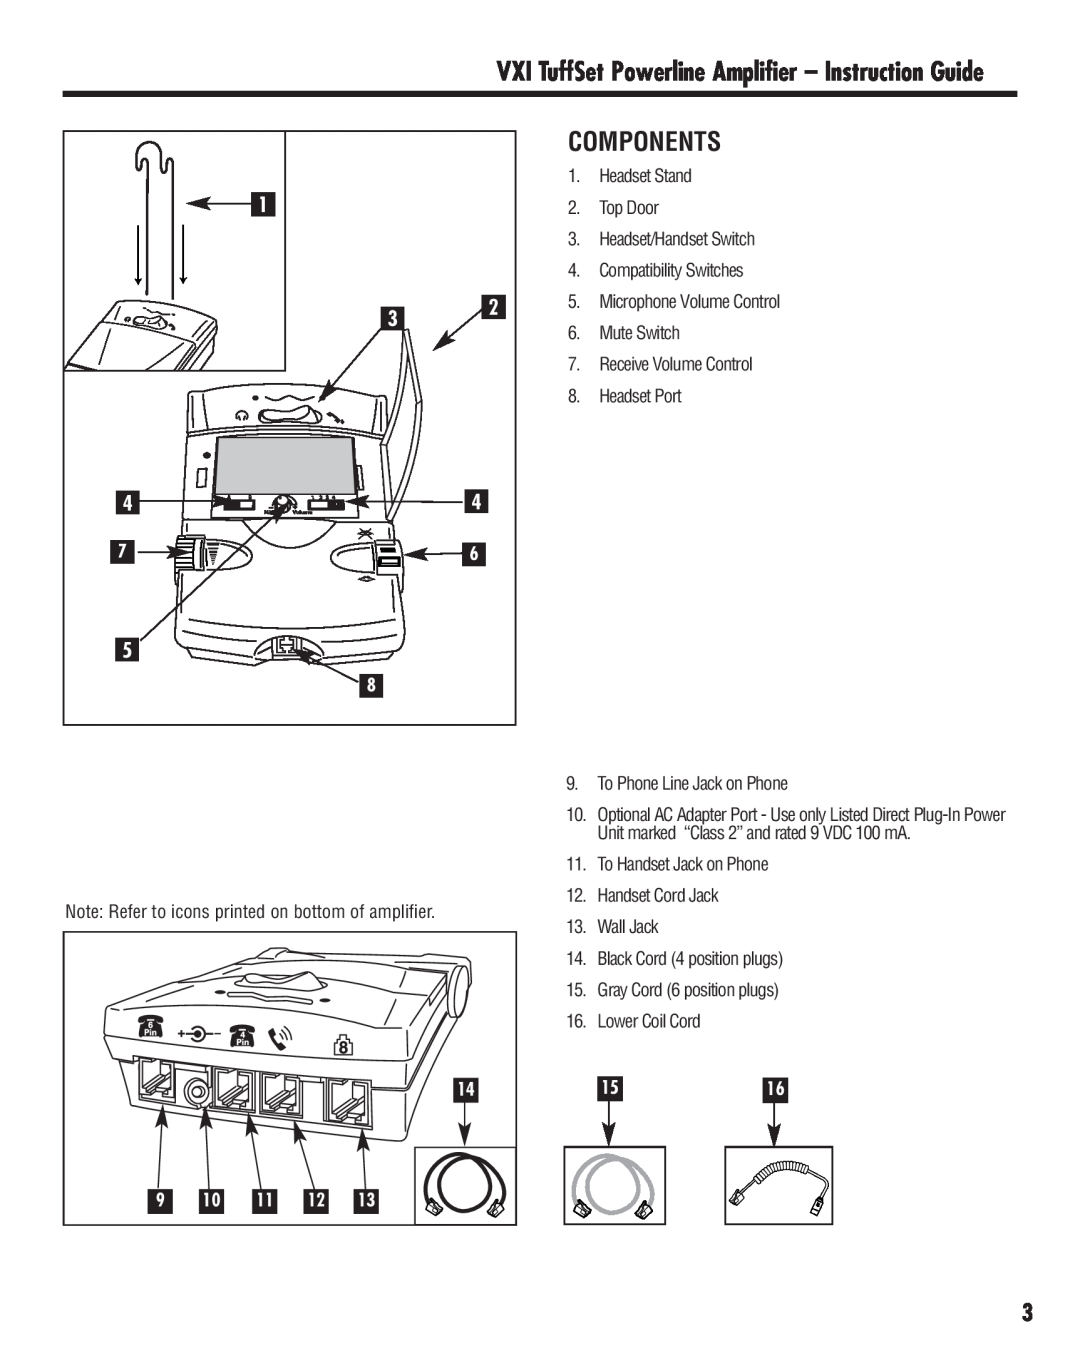 VXI Powerline Amplifier manual Components, 1516 